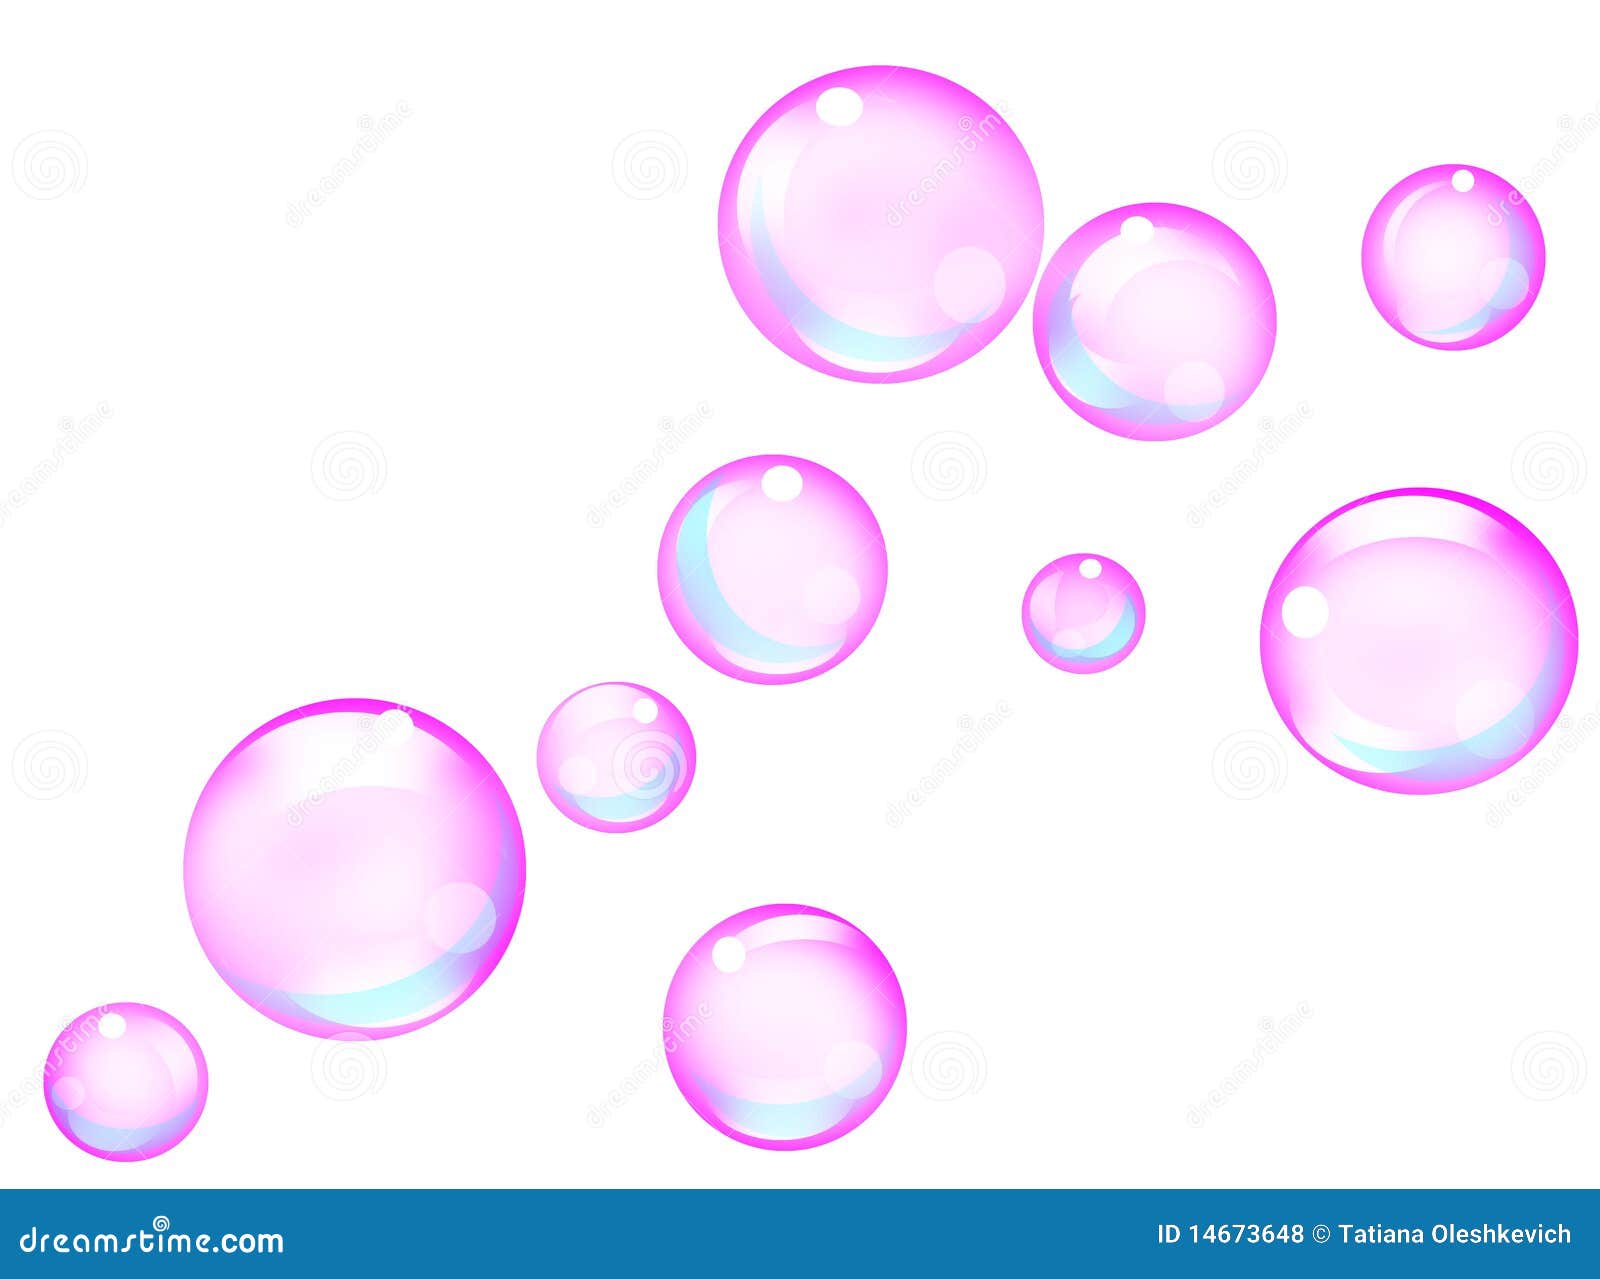 clipart bubbles background - photo #5